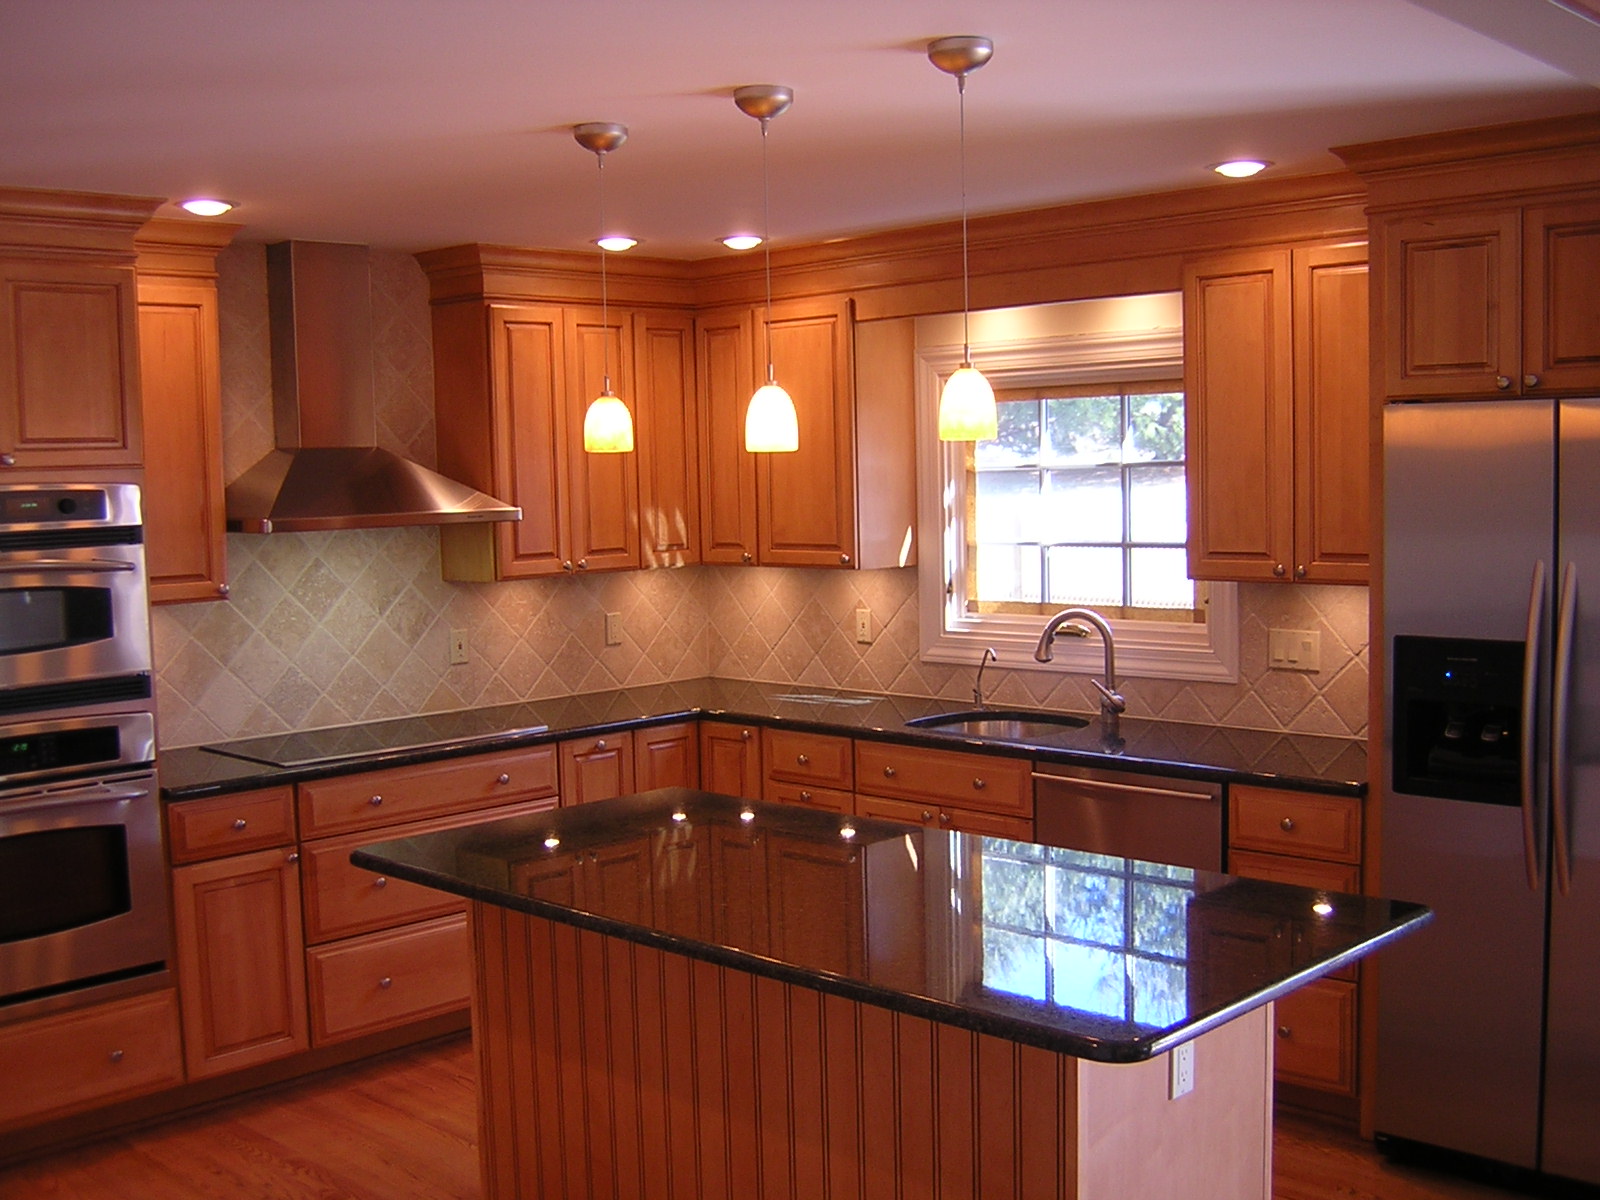 granite kitchen counter designs photo - 6